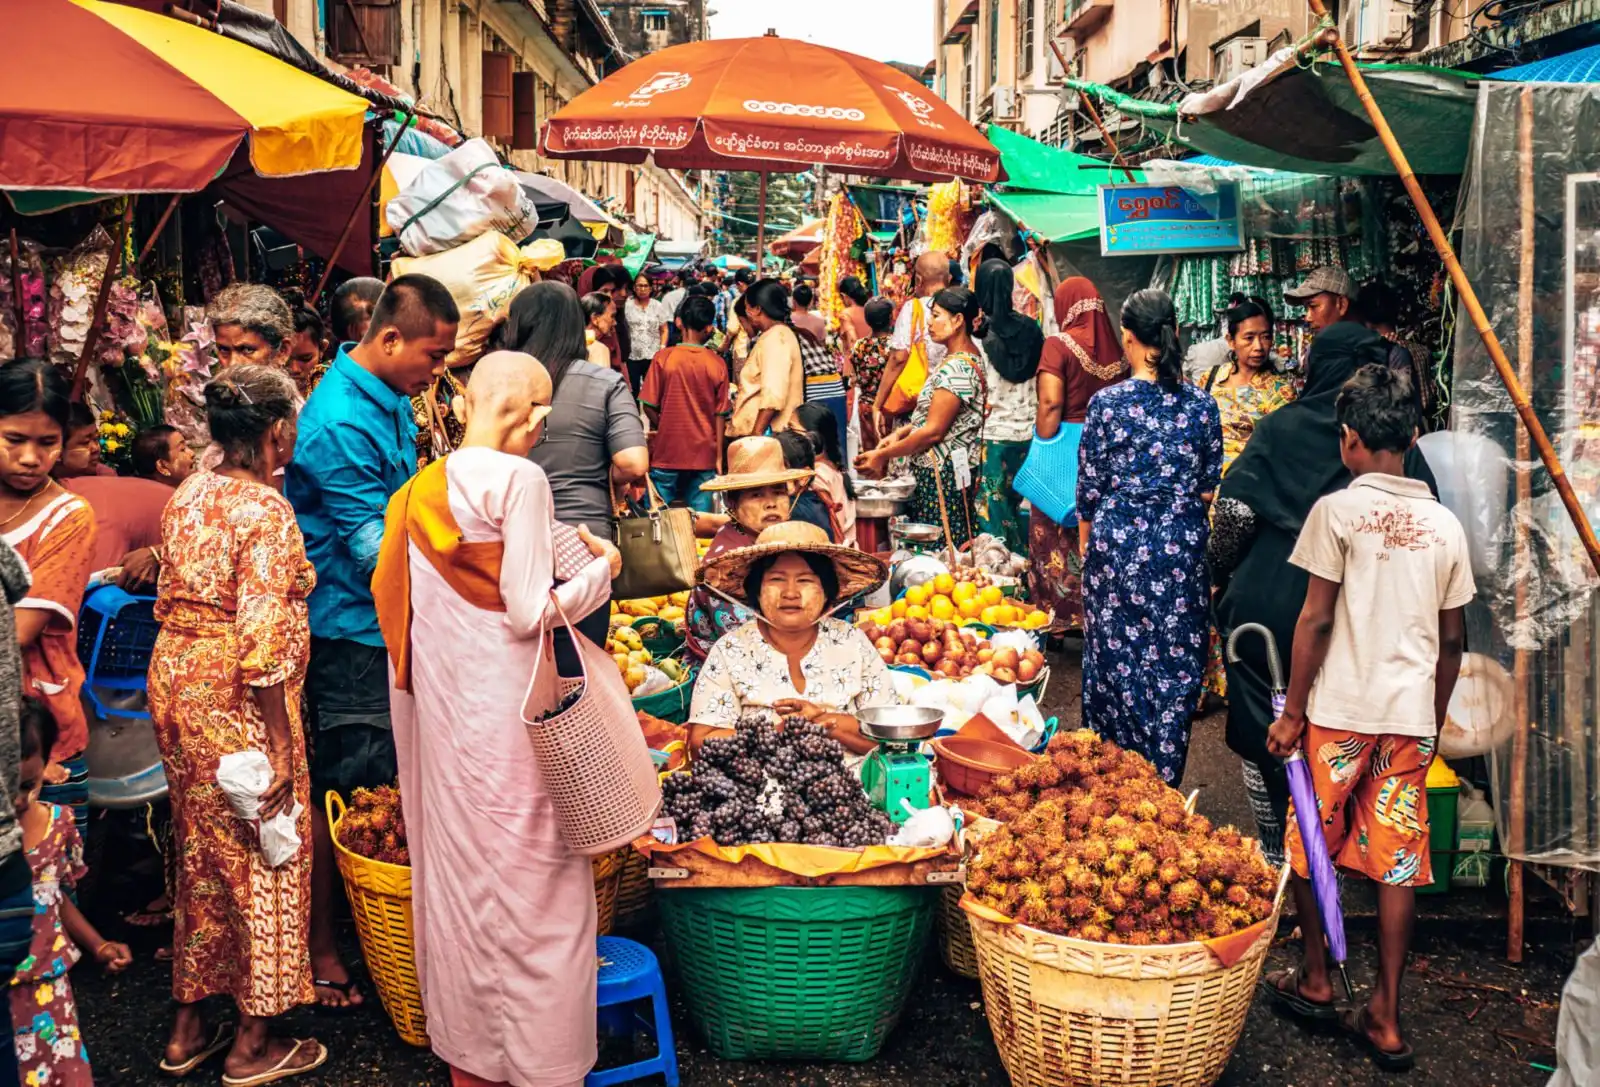 Downtown Yangon market